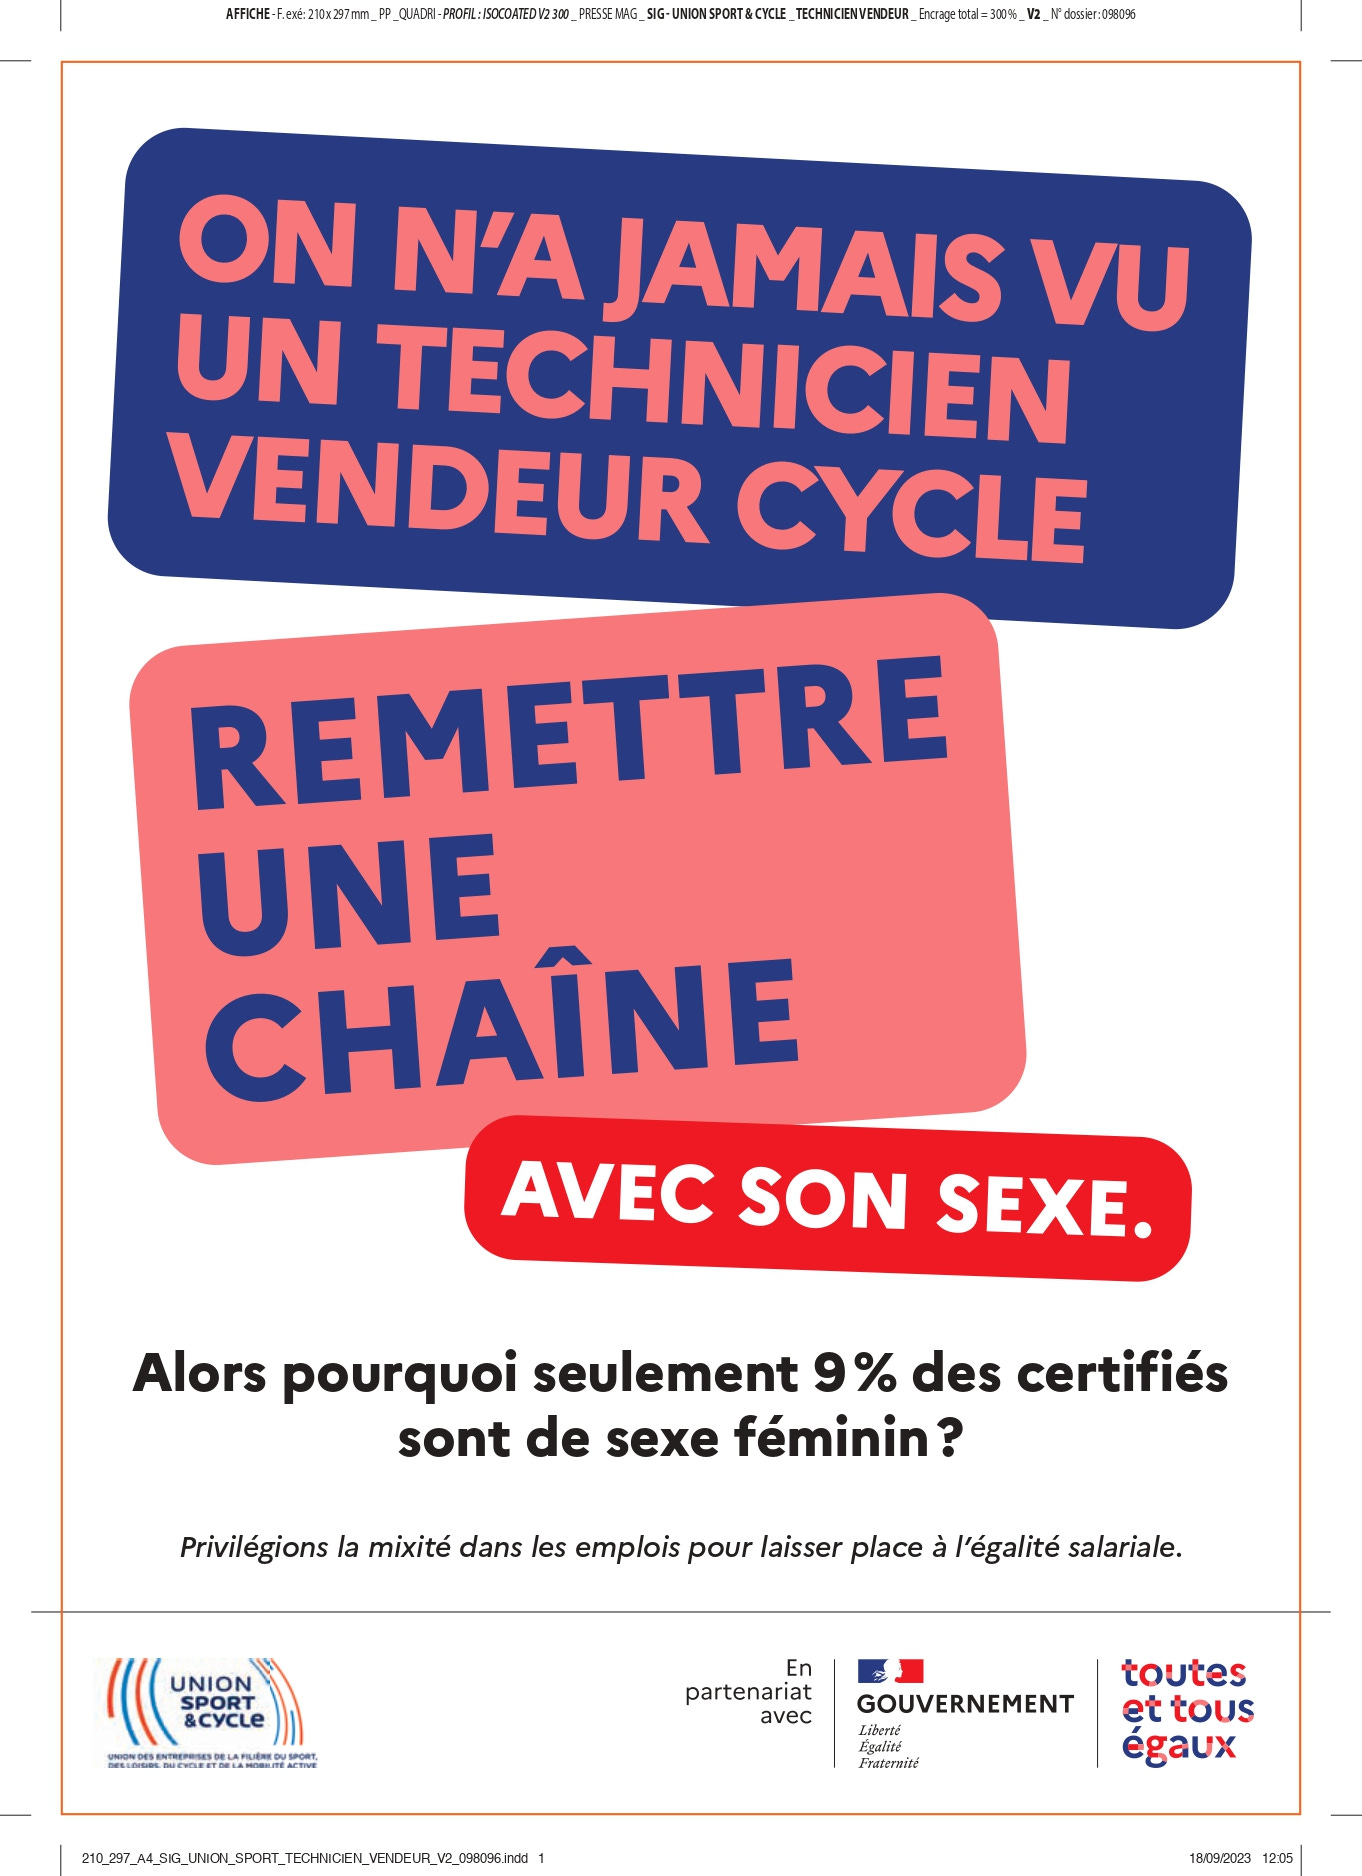 On n'a jamais vu un technicien vendeur cycle remettre une chaine avec son sexe. Alors pourquoi seulement 9% des certifies sont de sexe feminin?